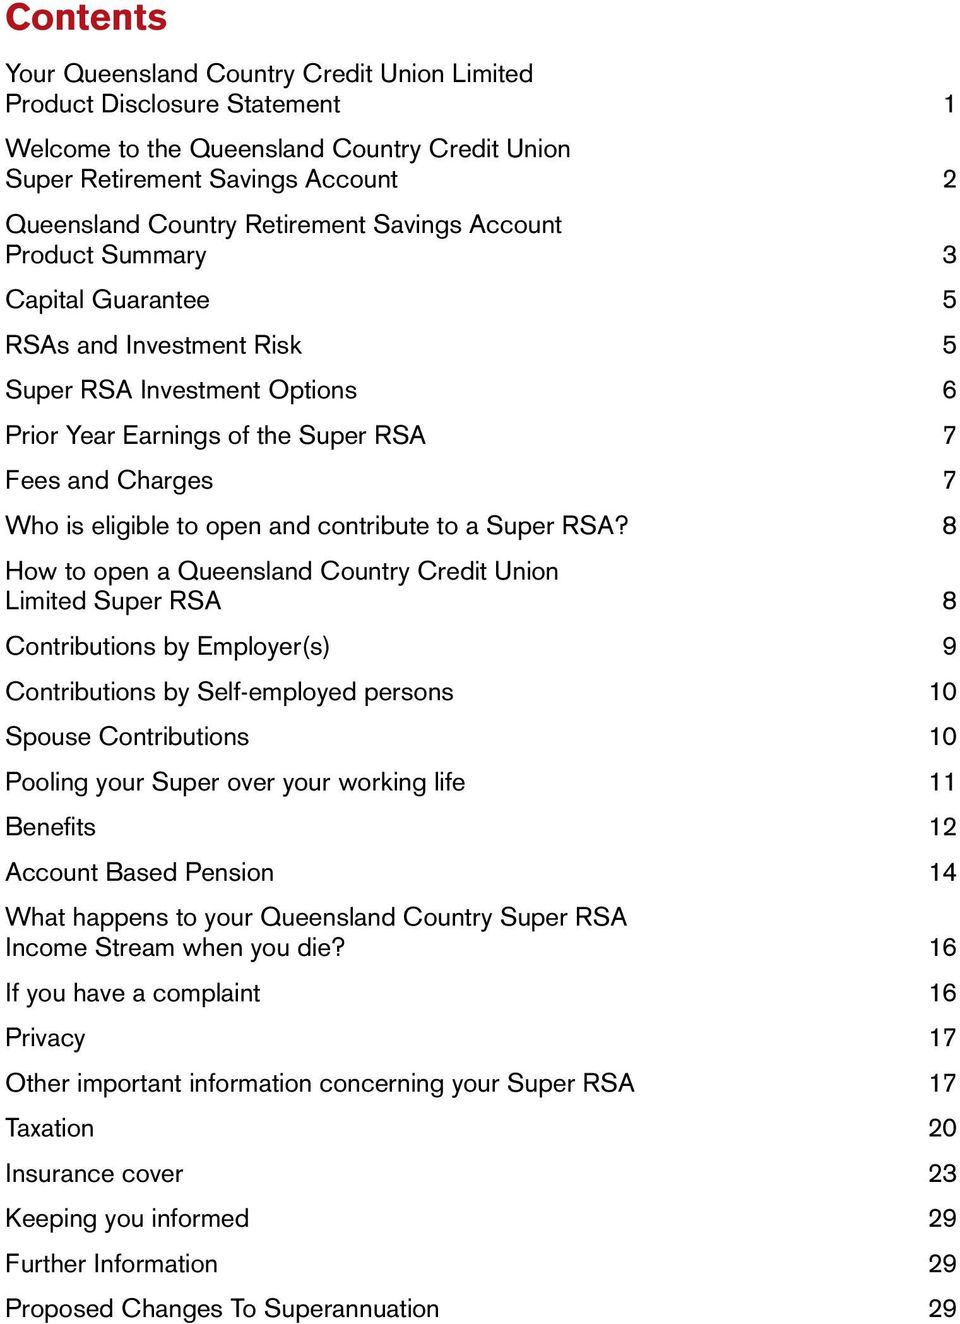 contribute to a Super RSA?